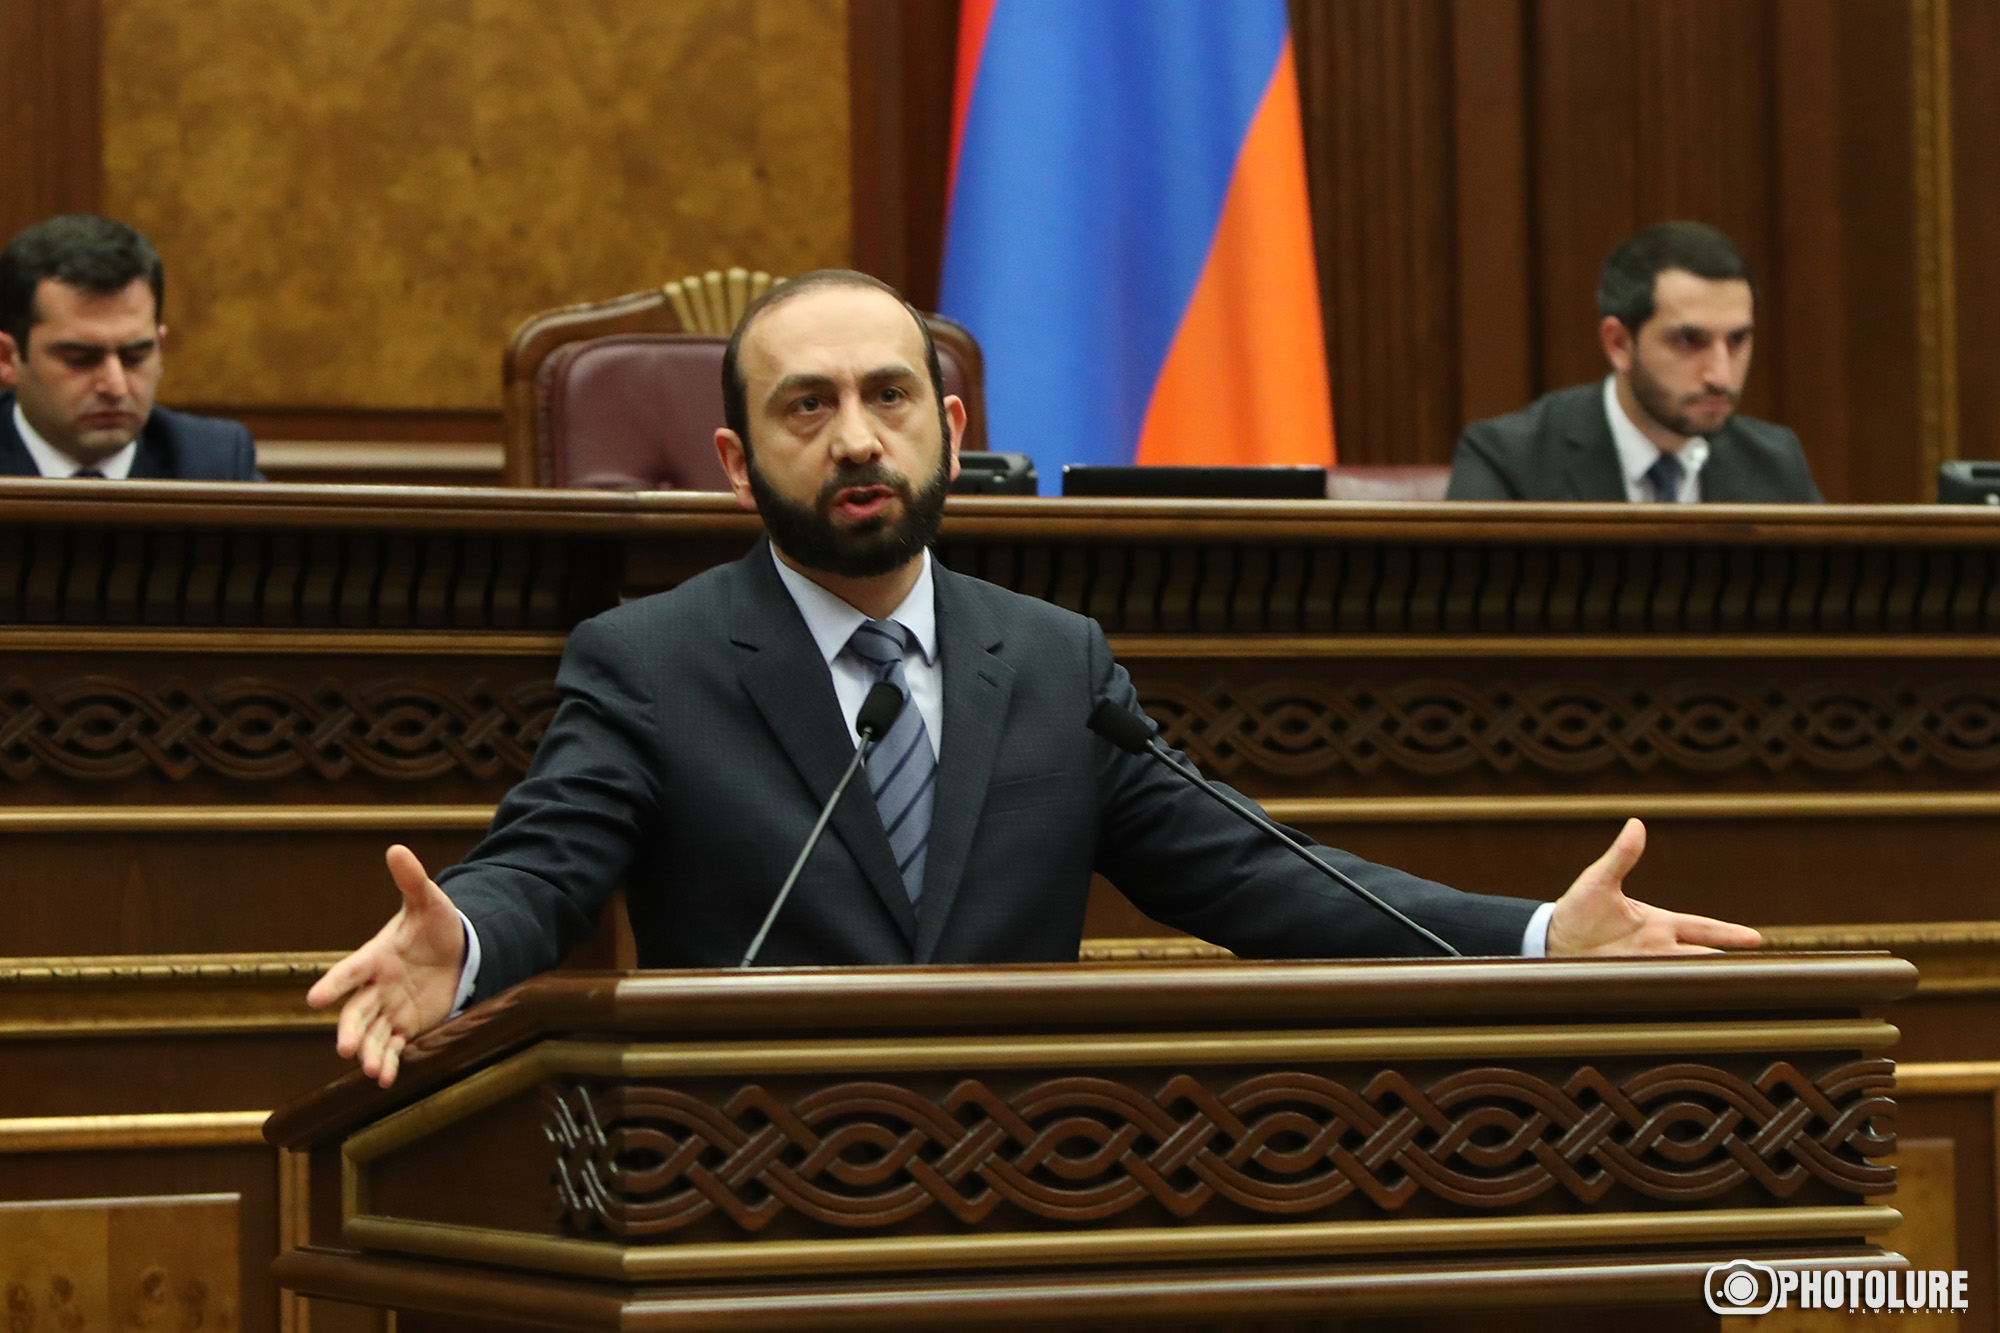 Ադրբեջանի առաջարկներում Հայաստանի համար անընդունելի ոչինչ չկա, բայց դրանք ամբողջական չեն․ Միրզոյան